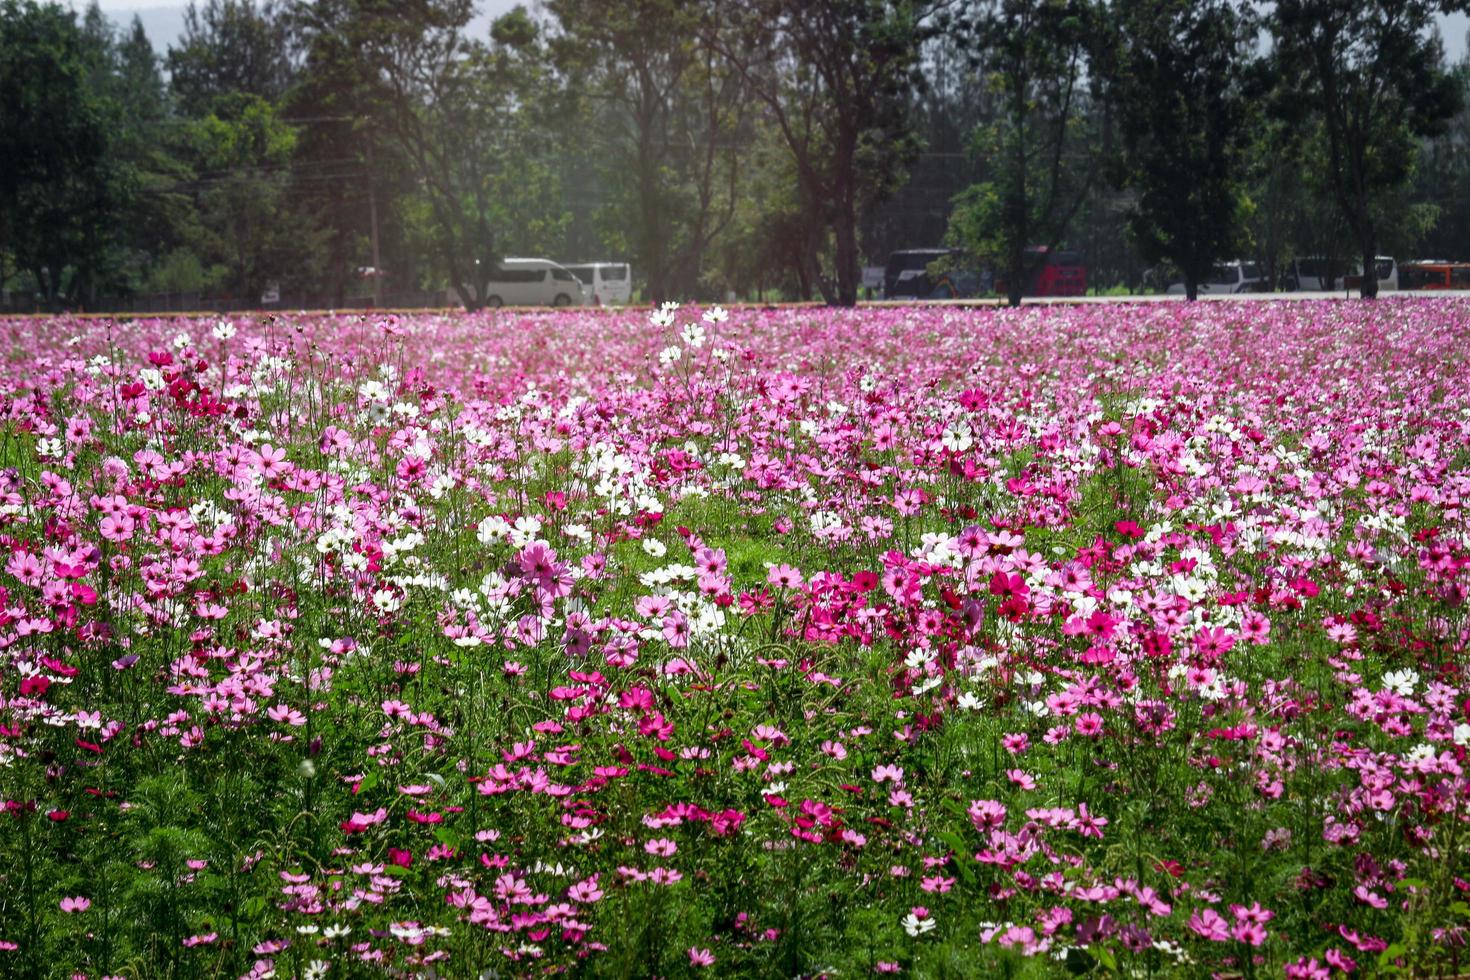 cosmo rosa fiore cosmo in fiore campo di fiori, bellissimo giardino estivo naturale vivido parco all'aperto immagine. foto